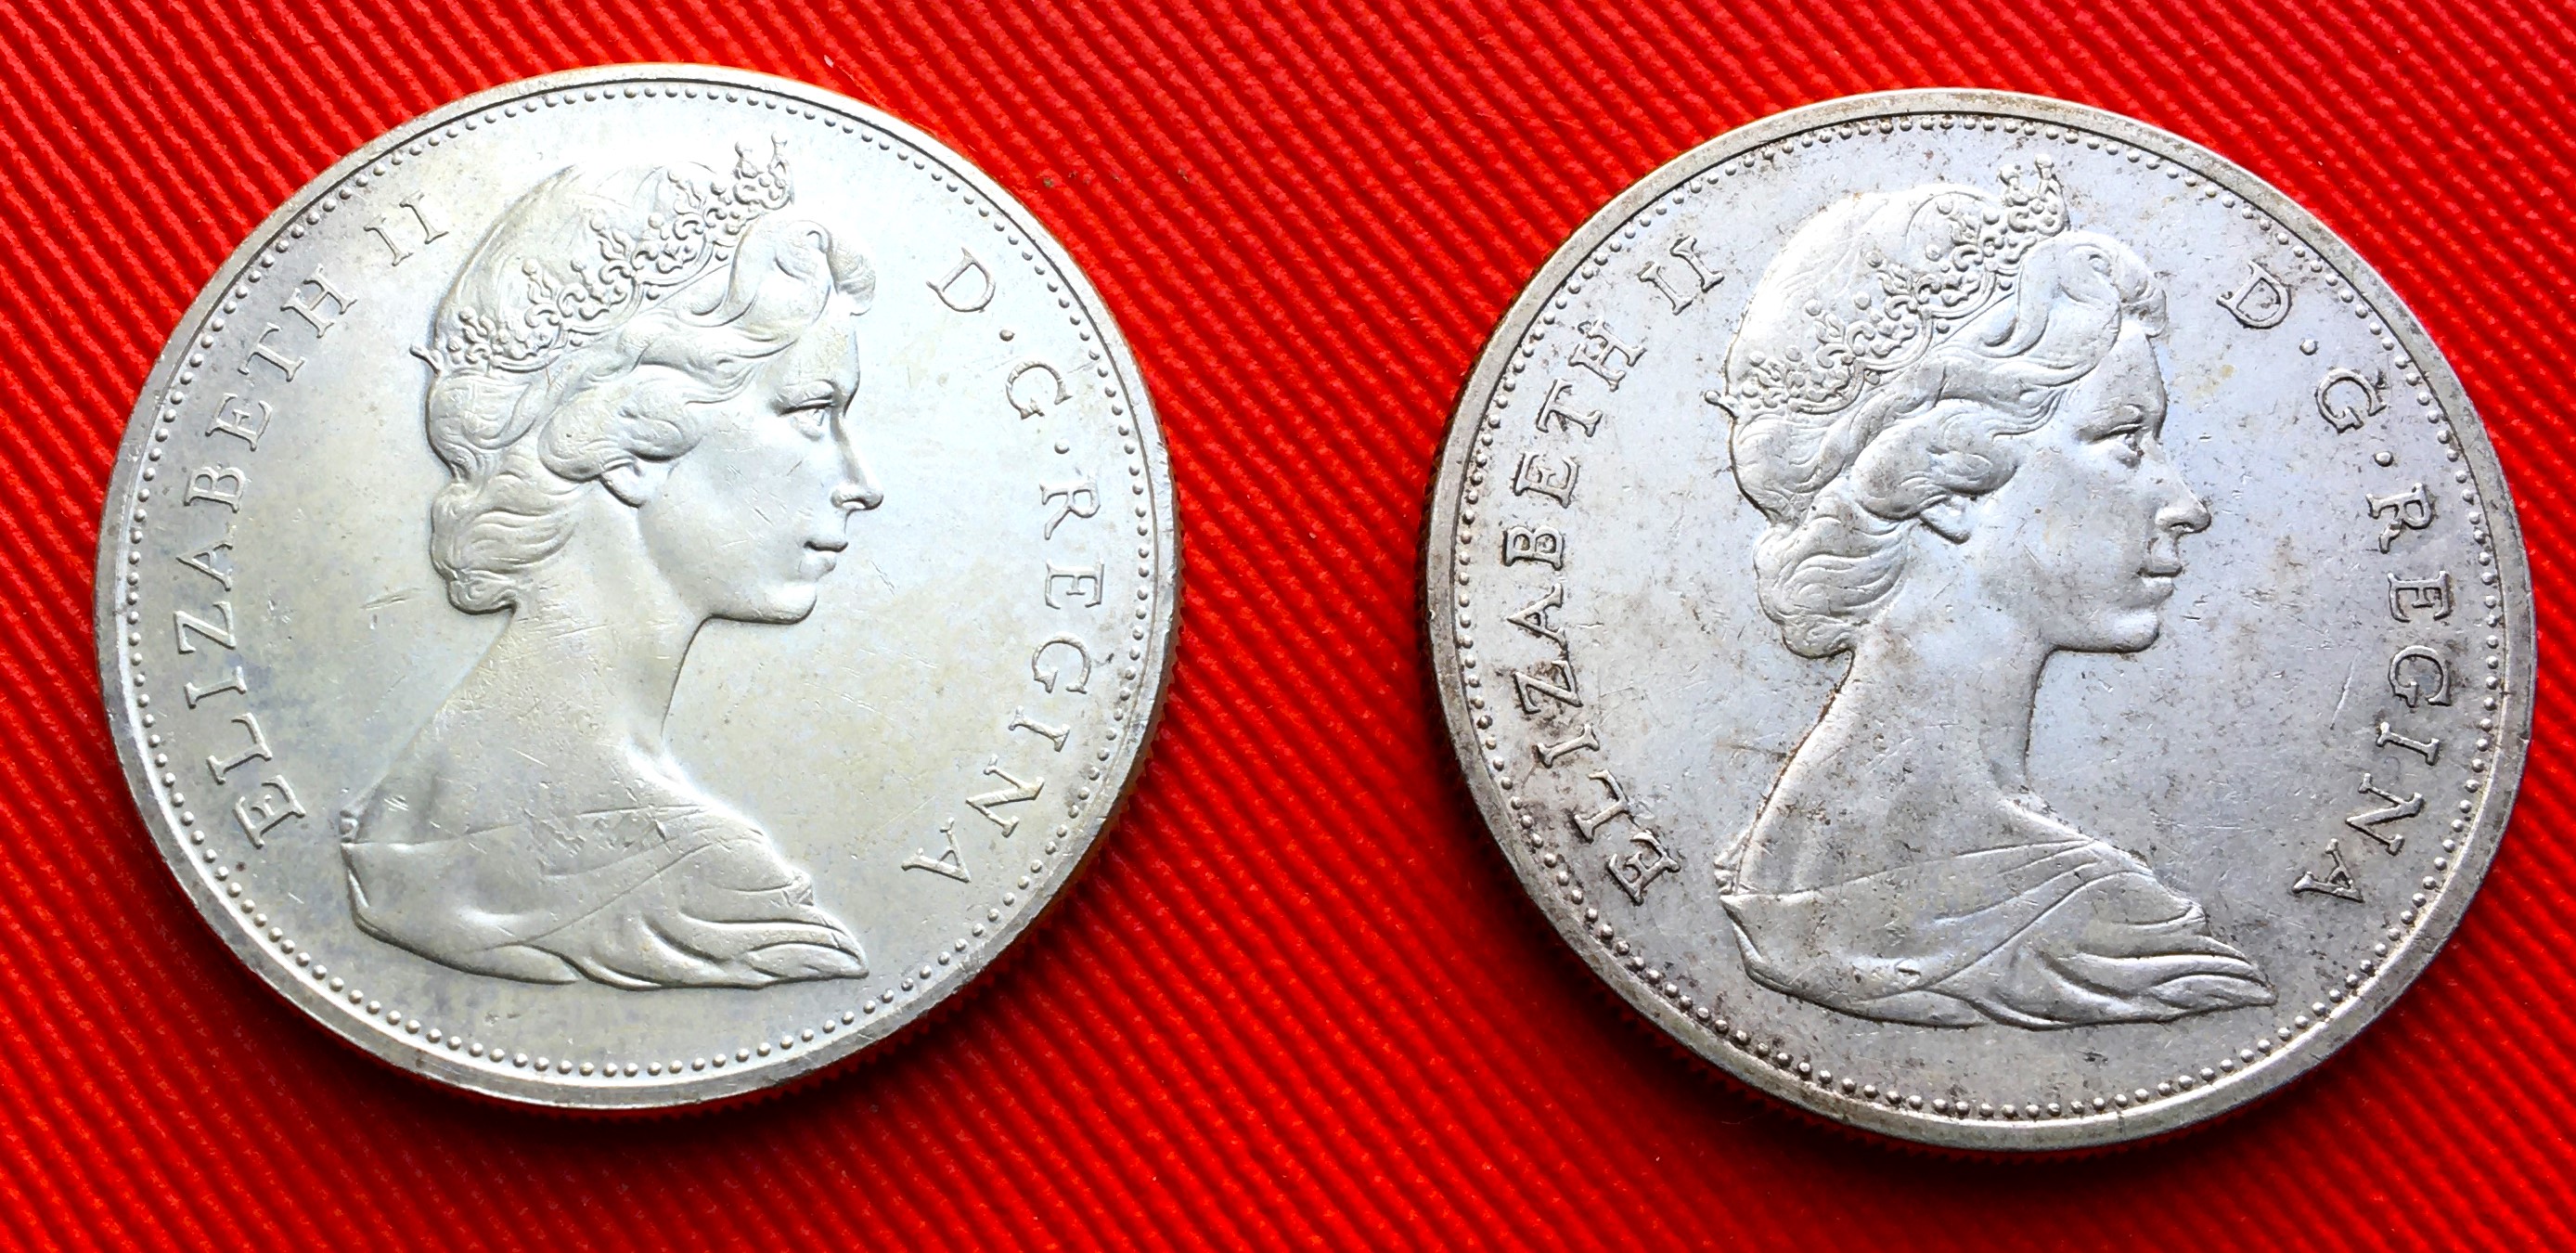 Dollar 1965 petites perles avers.JPG